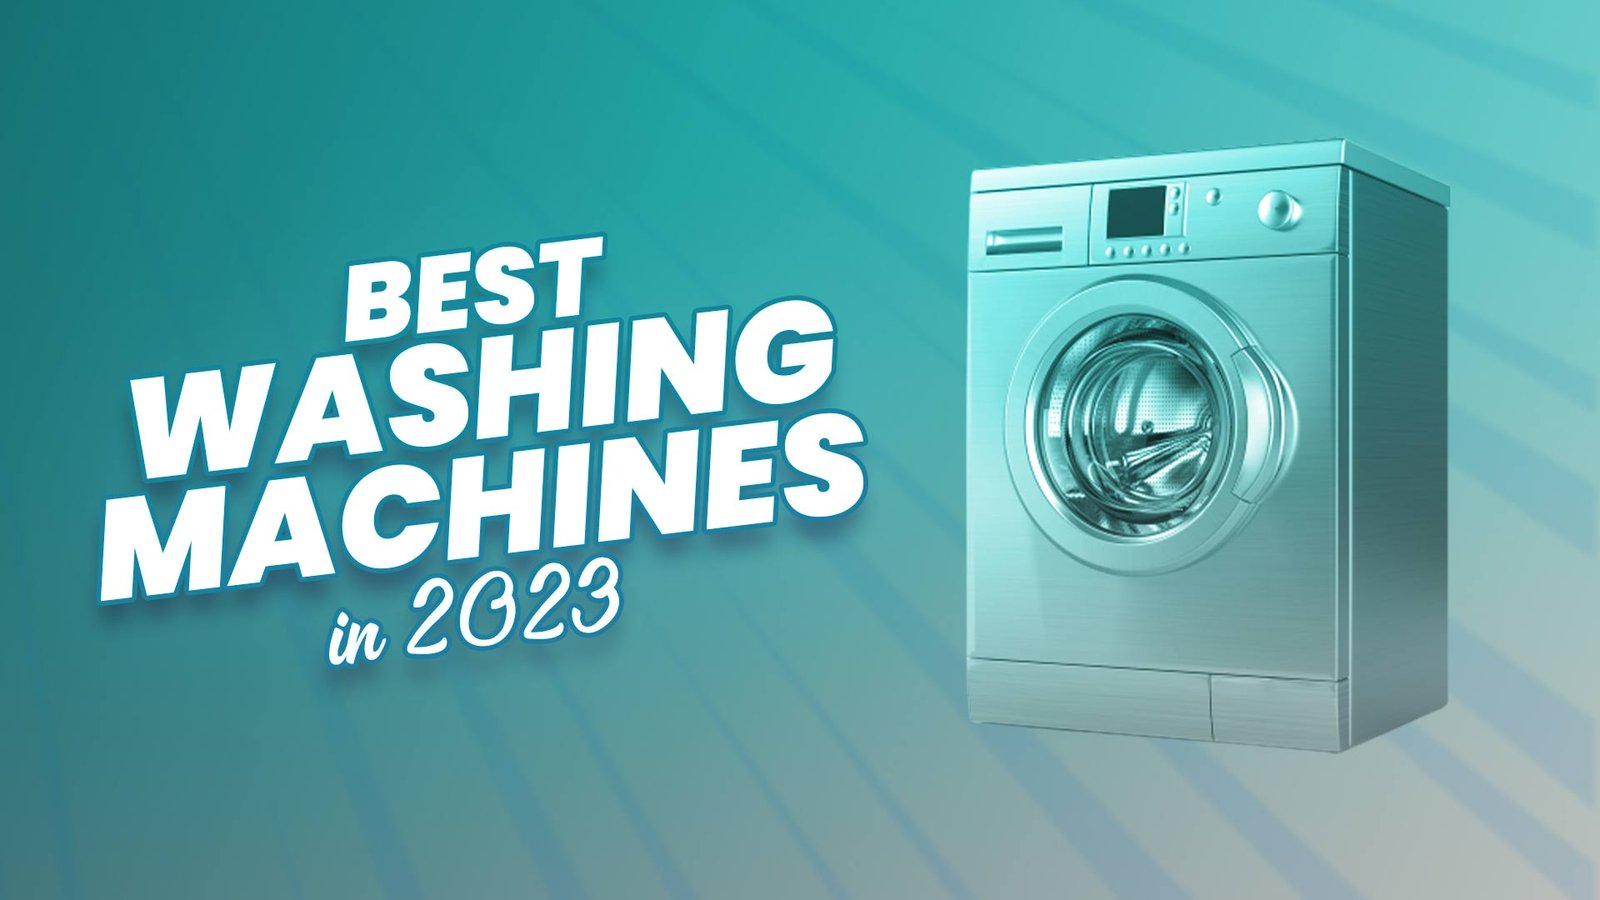 Best Washing Machines in 2023